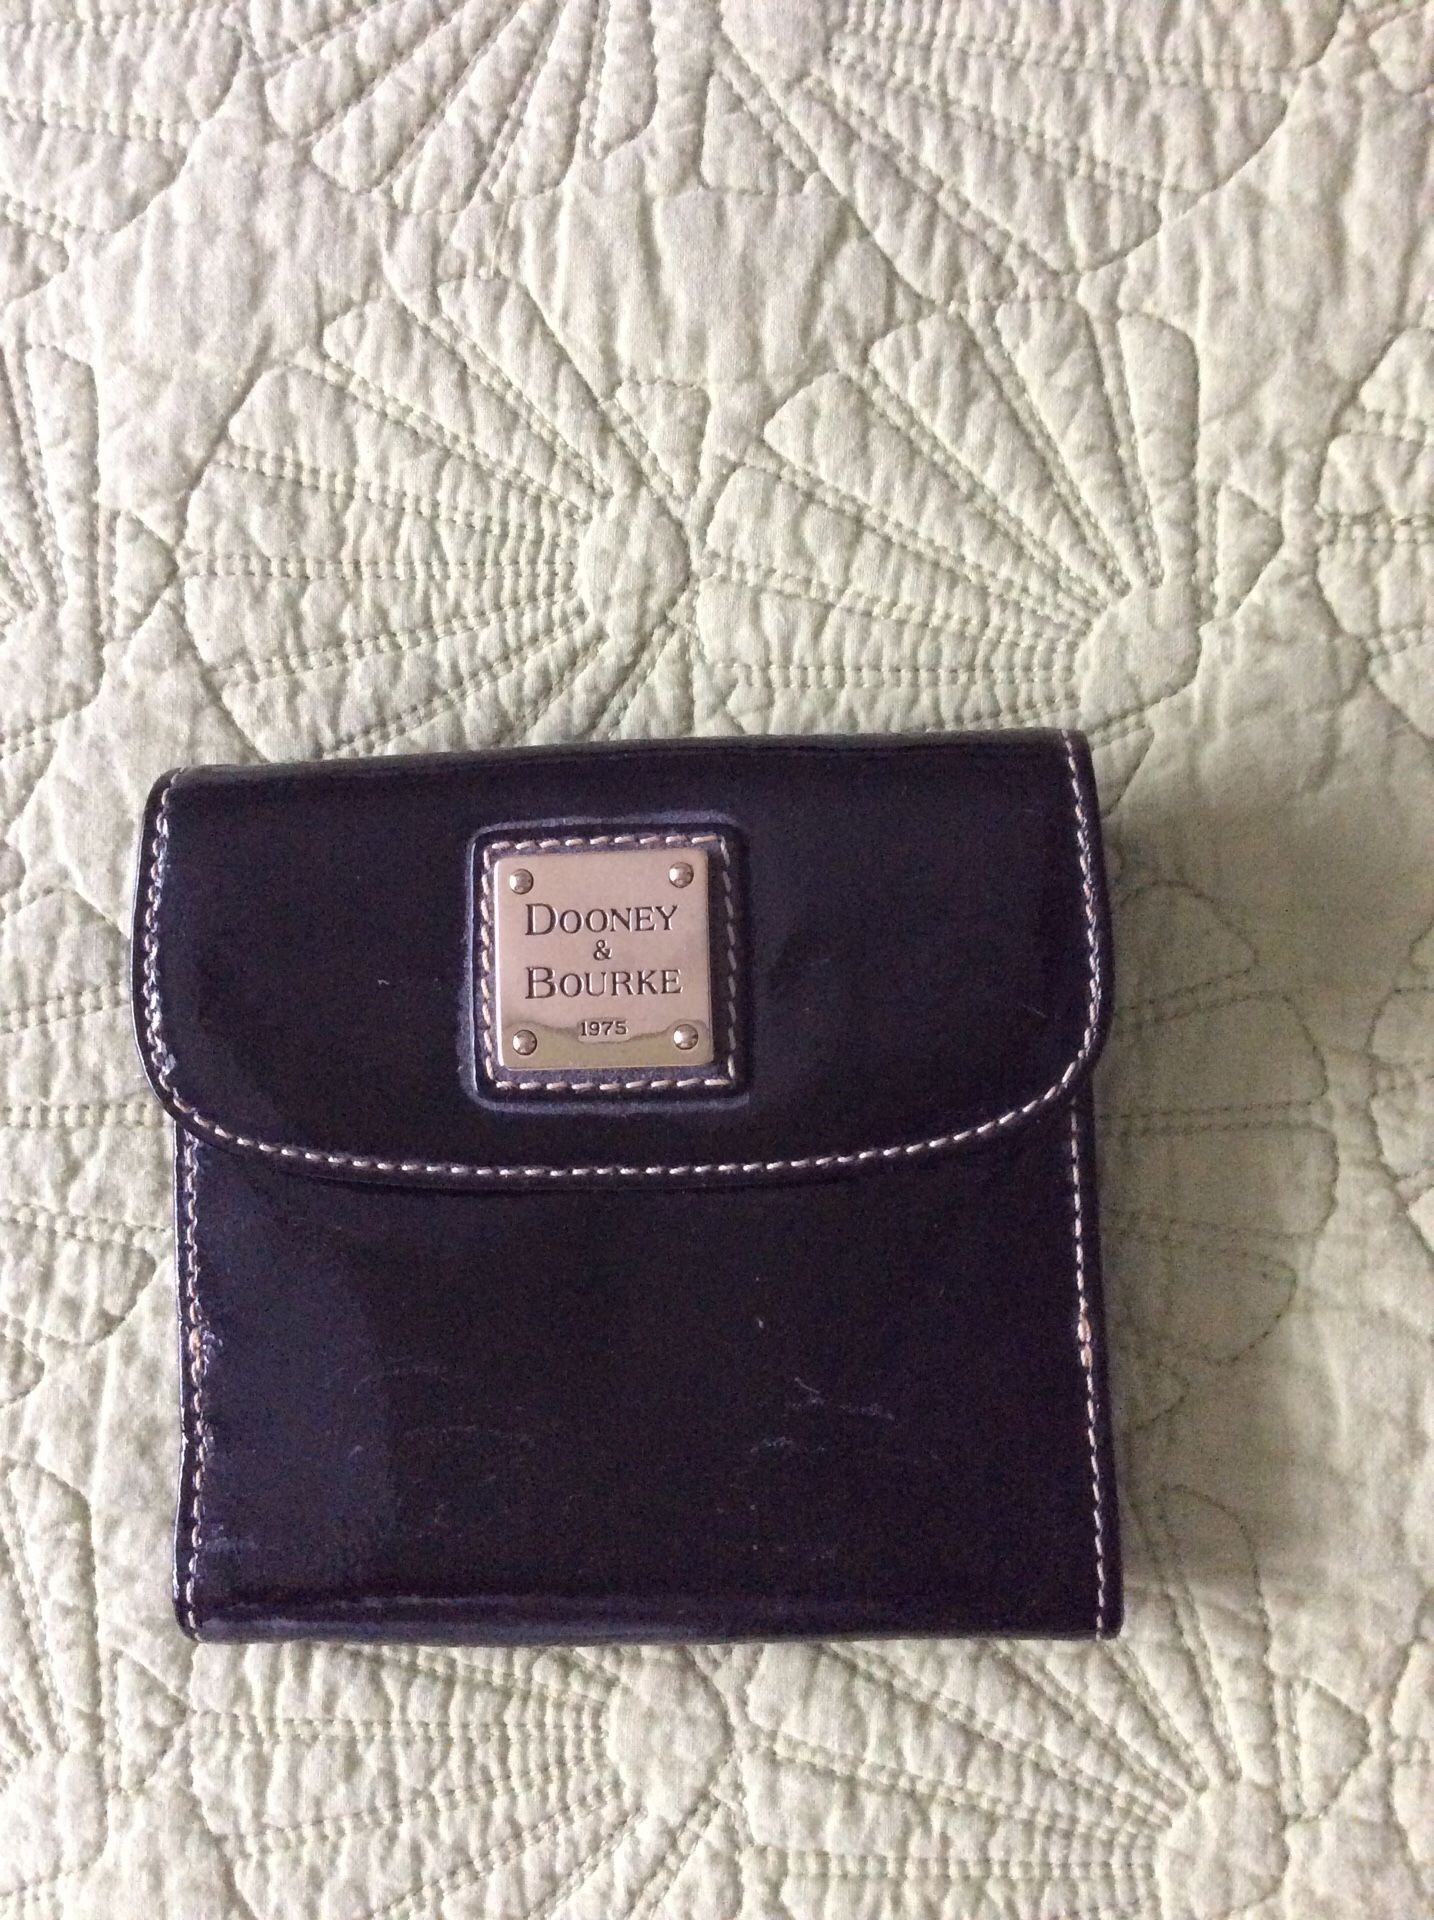 Dooney & Bourke wallet